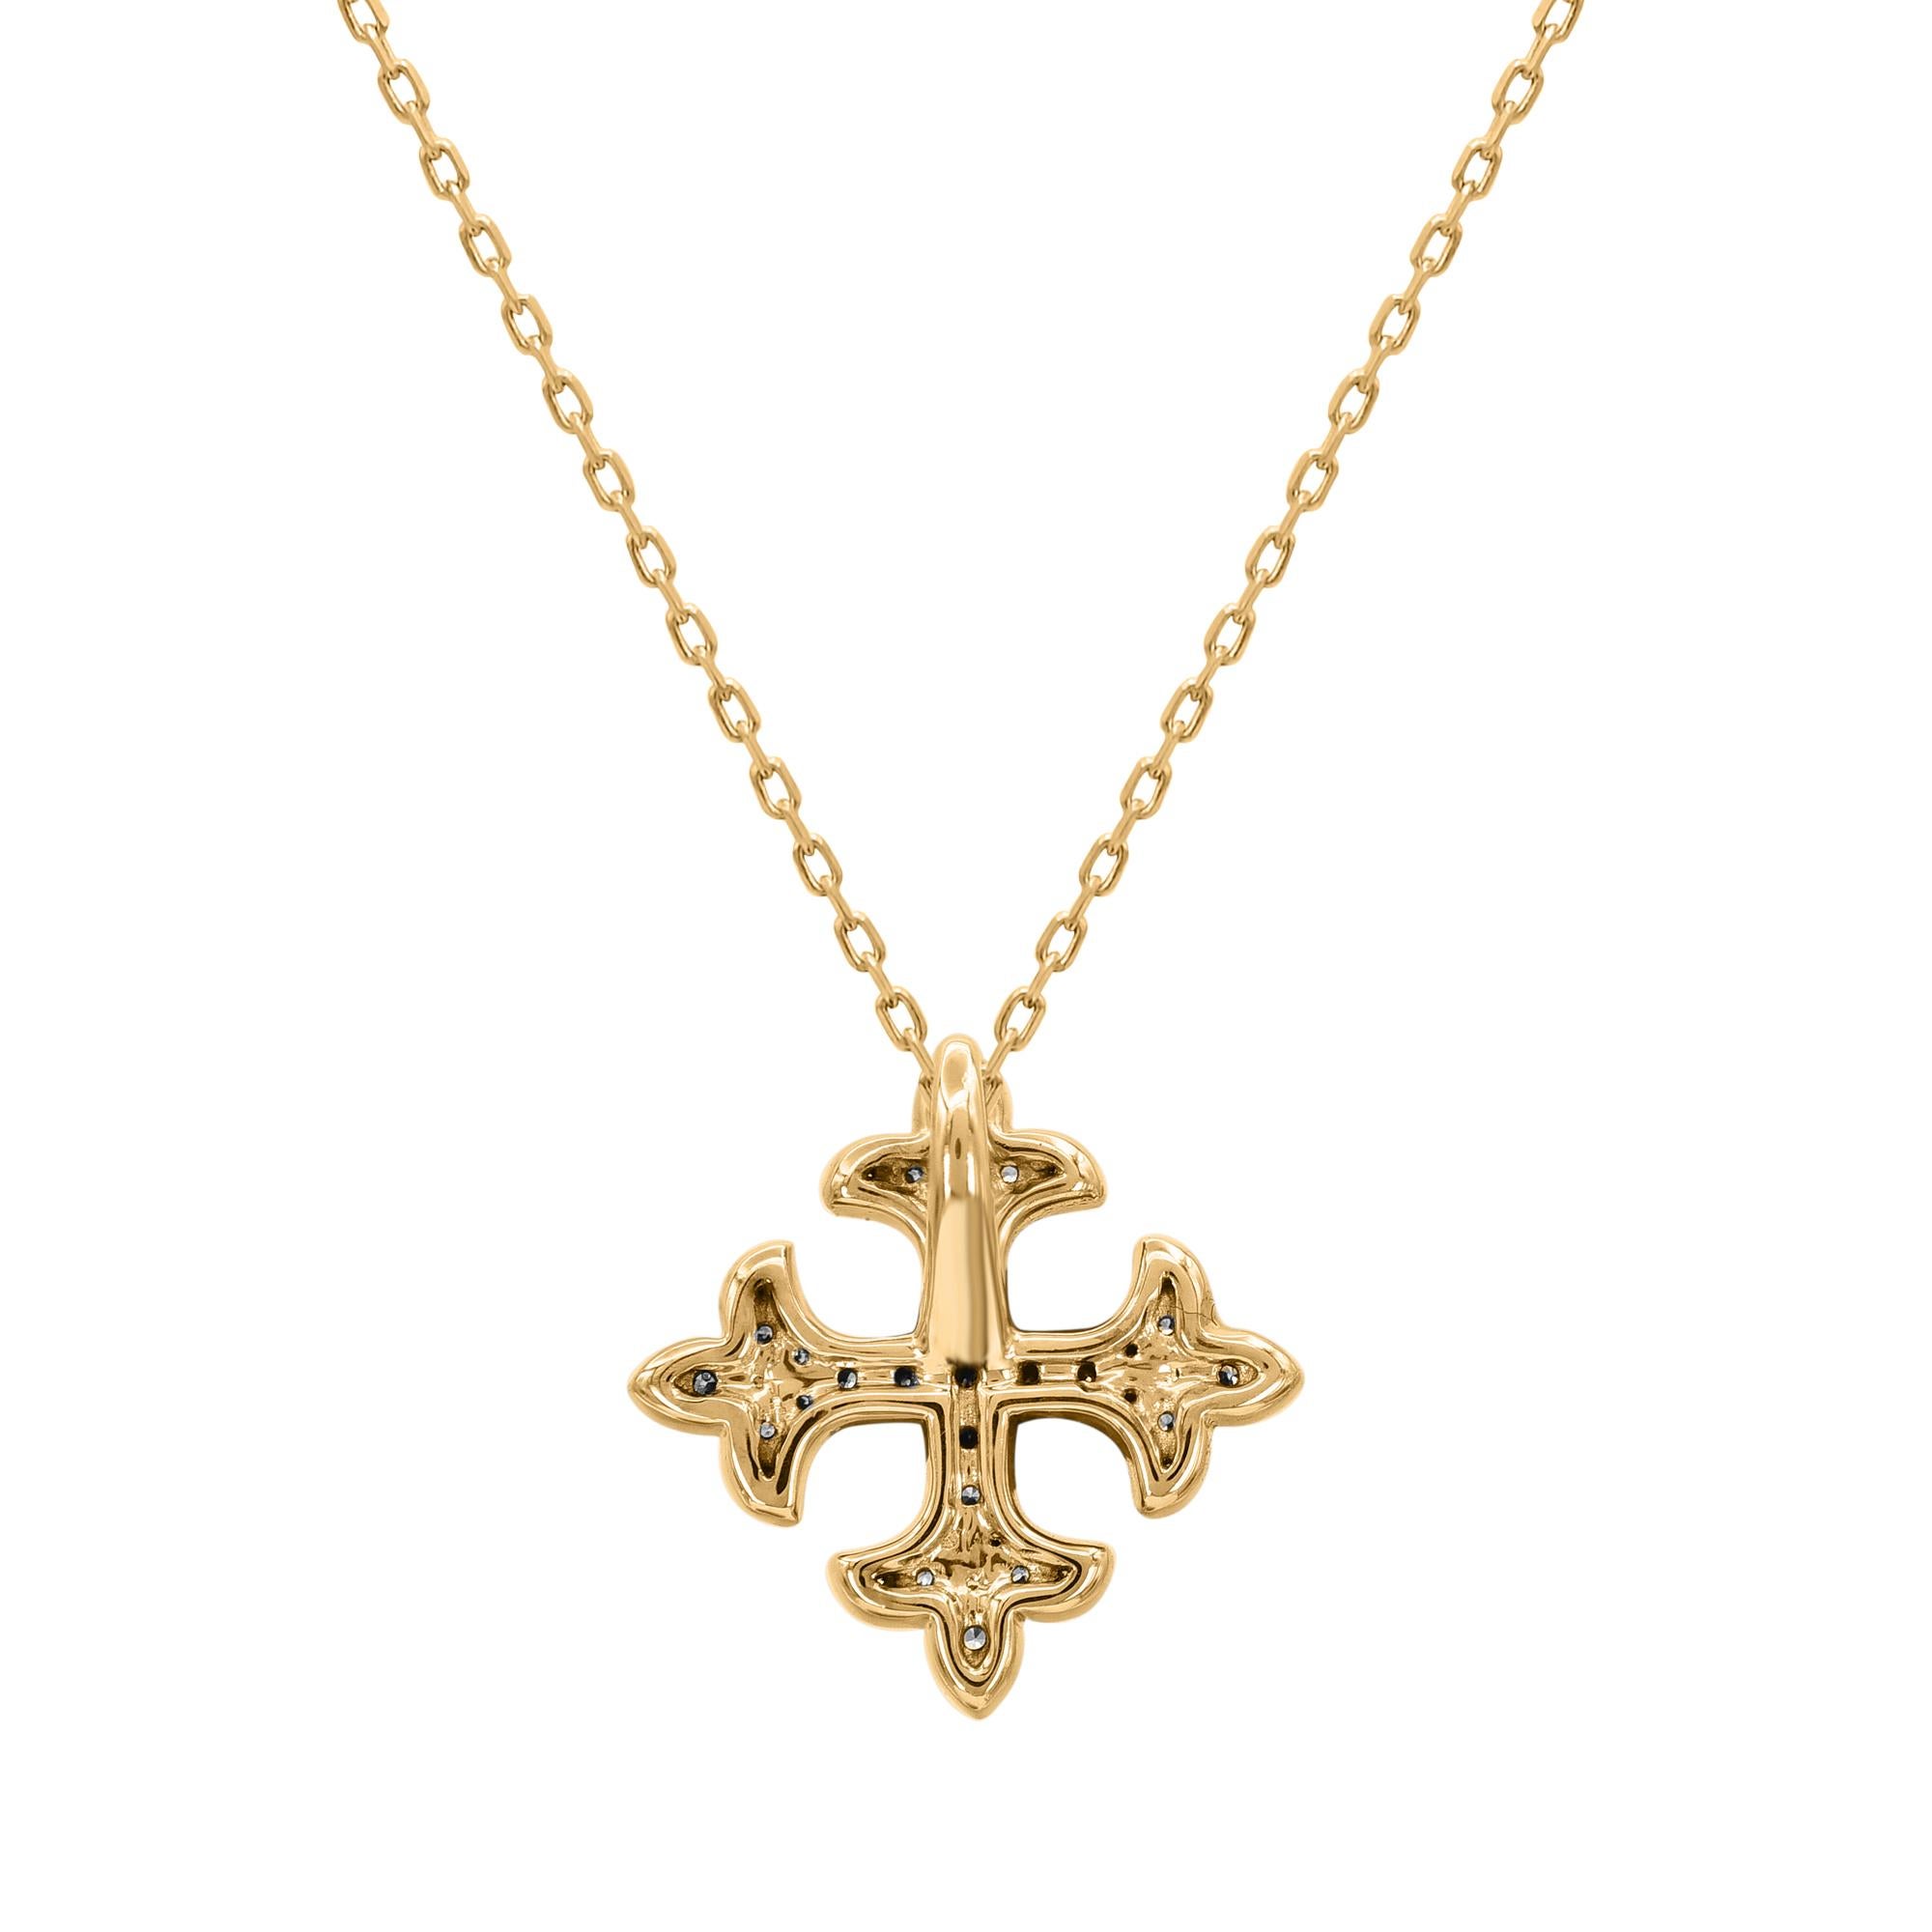 Contemporary TJD 0.12 Carat Natural Diamond Square Fleur-de-lis Pendant Necklace in 18KT Gold For Sale